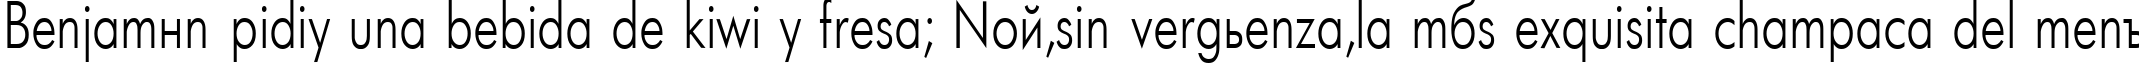 Пример написания шрифтом Futuris75n текста на испанском